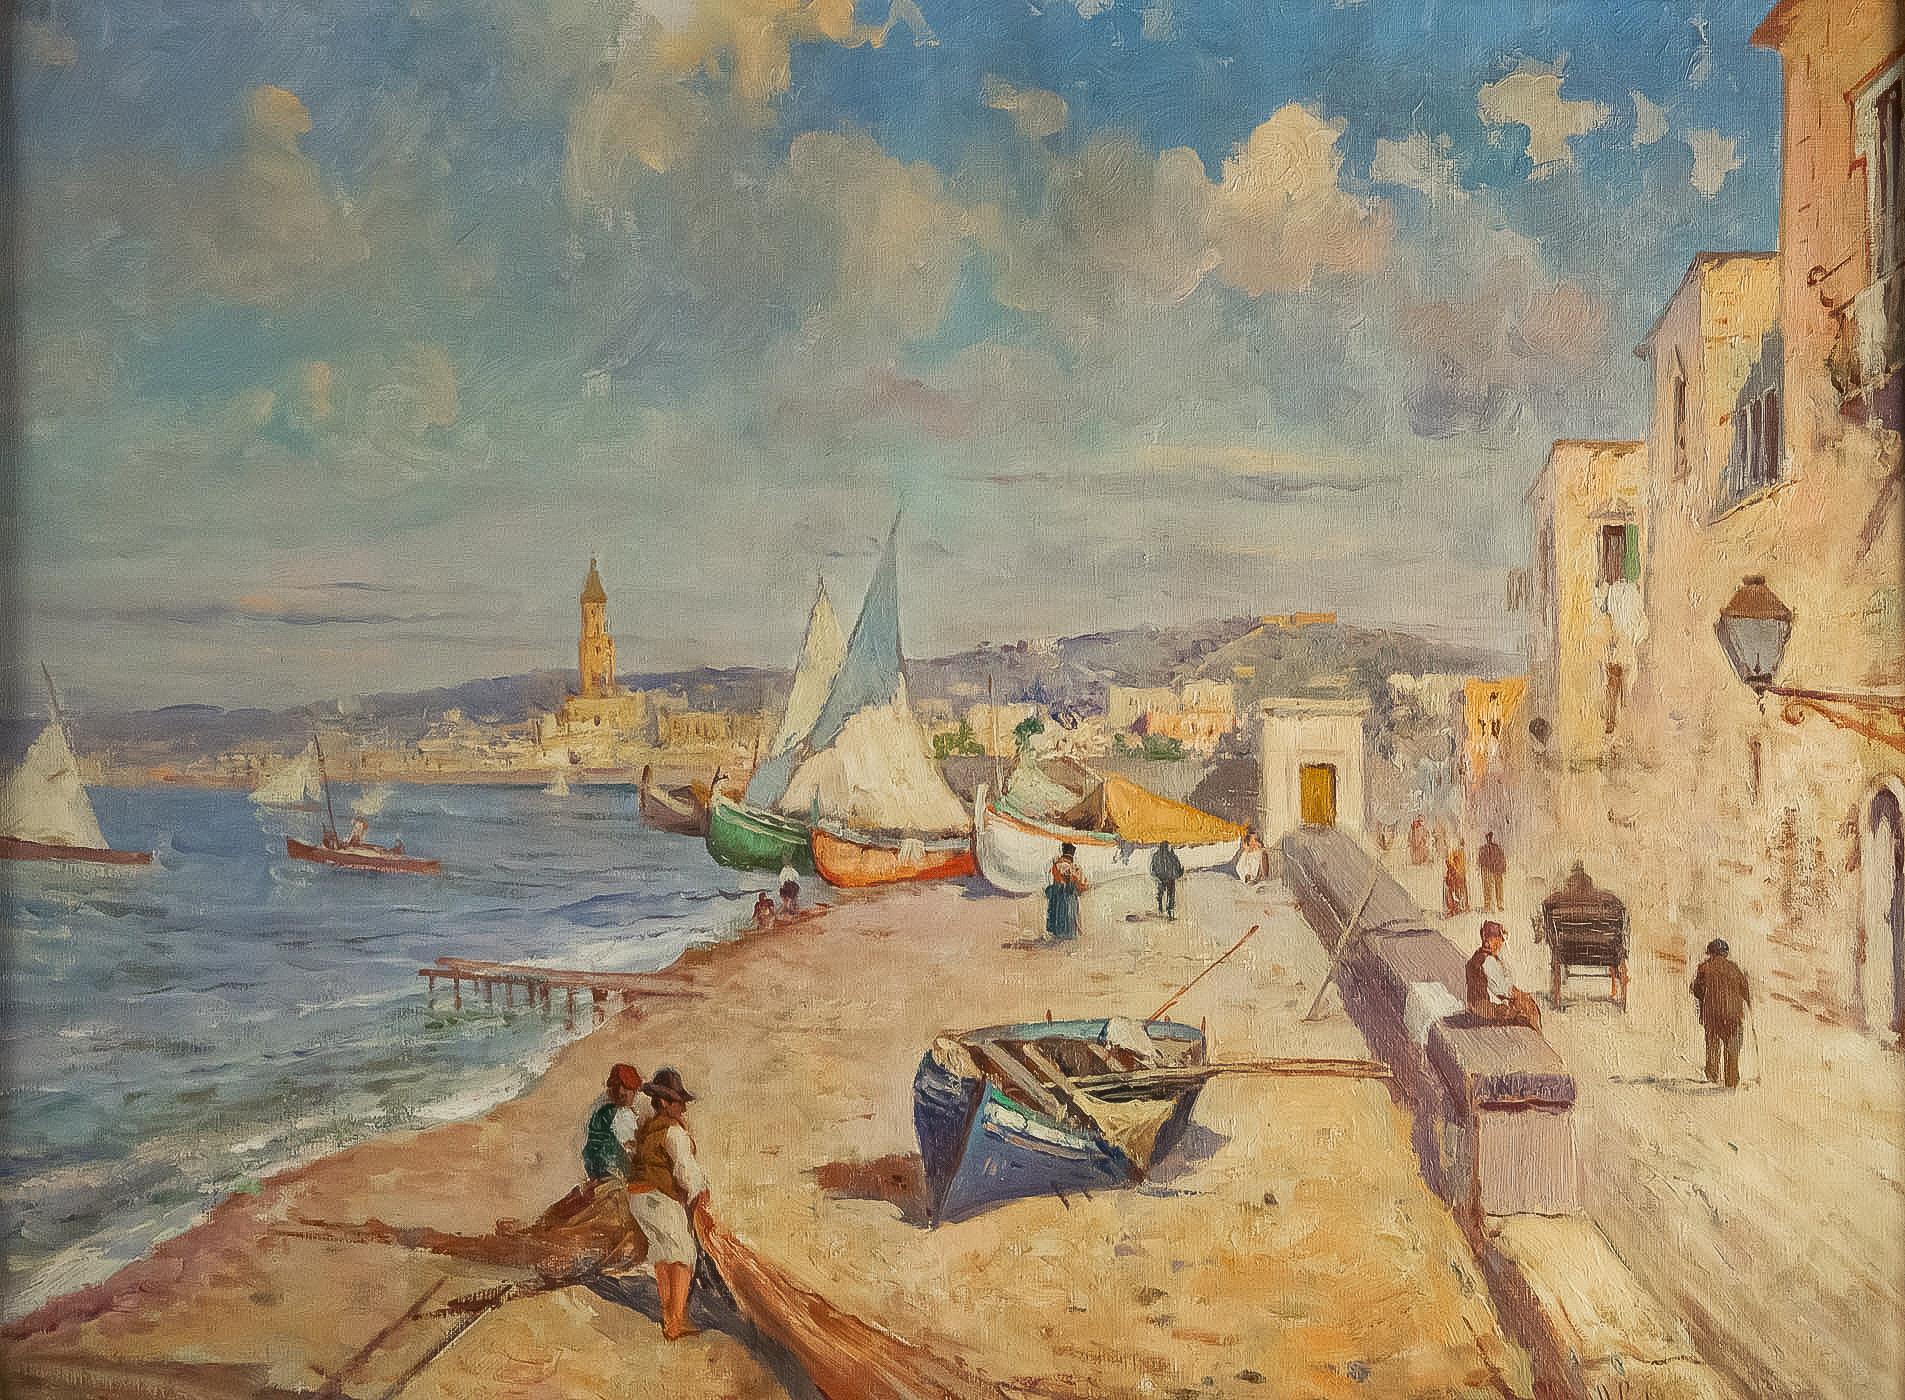 Oiled Balsamo Salvatore, Oil on Canvas Italian Marine Landscape, circa 1910